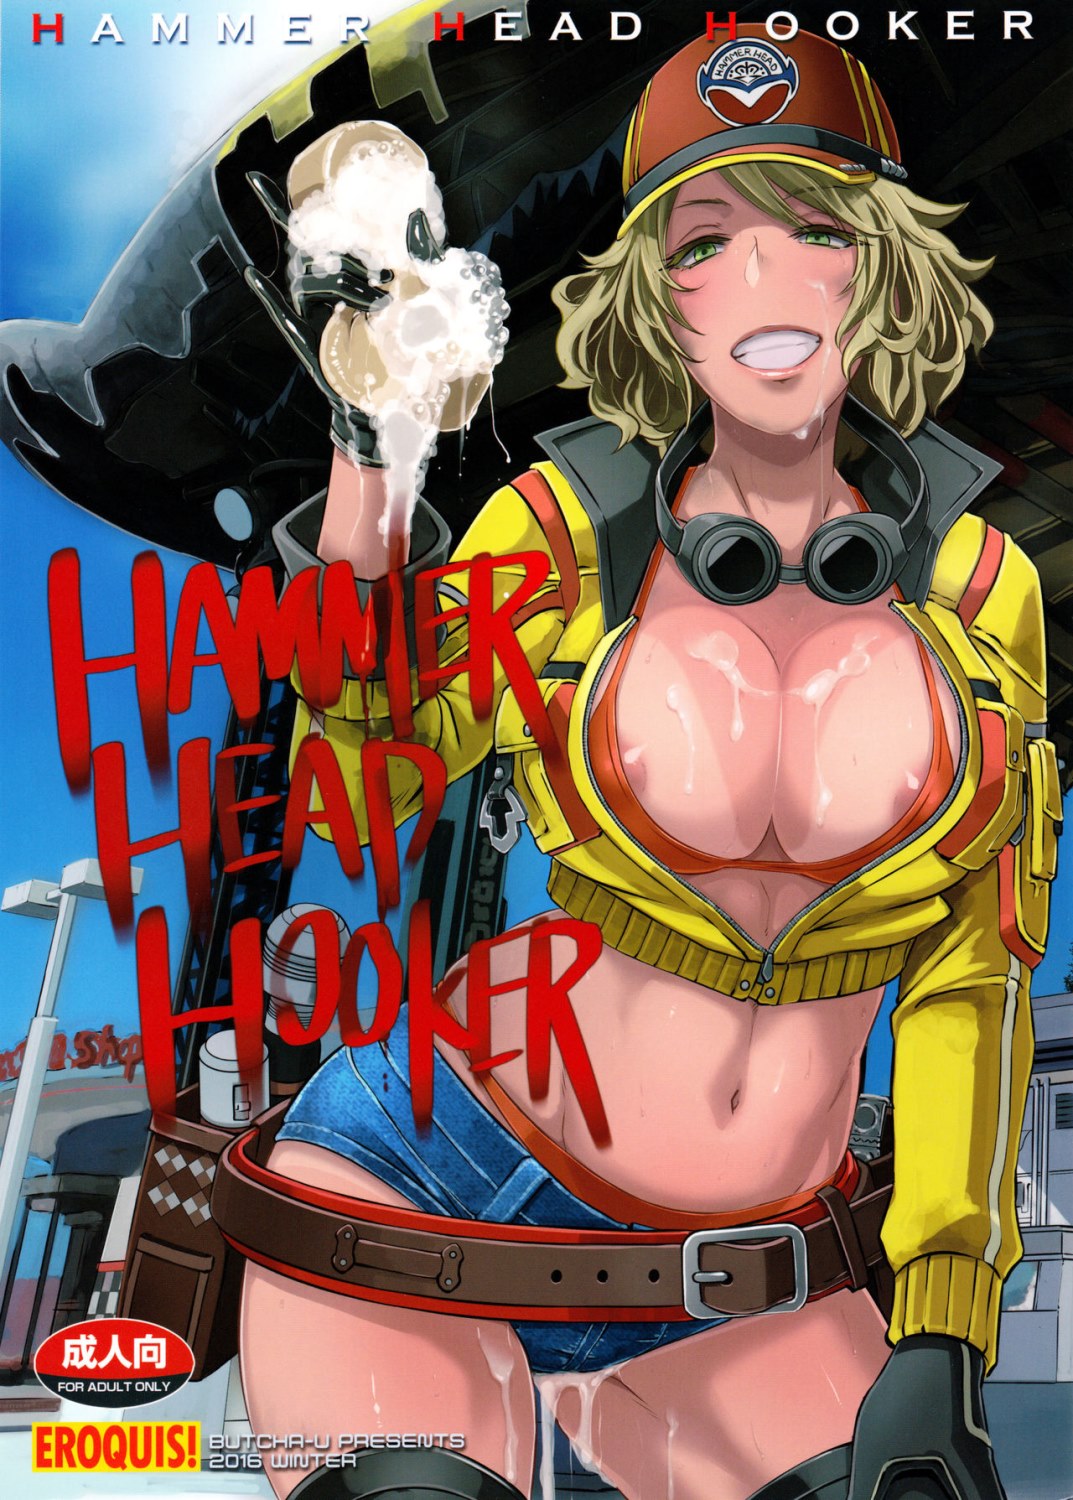 Porn Comics - Hammer Head Hooker- Final Fantasy XV porn comics 8 muses